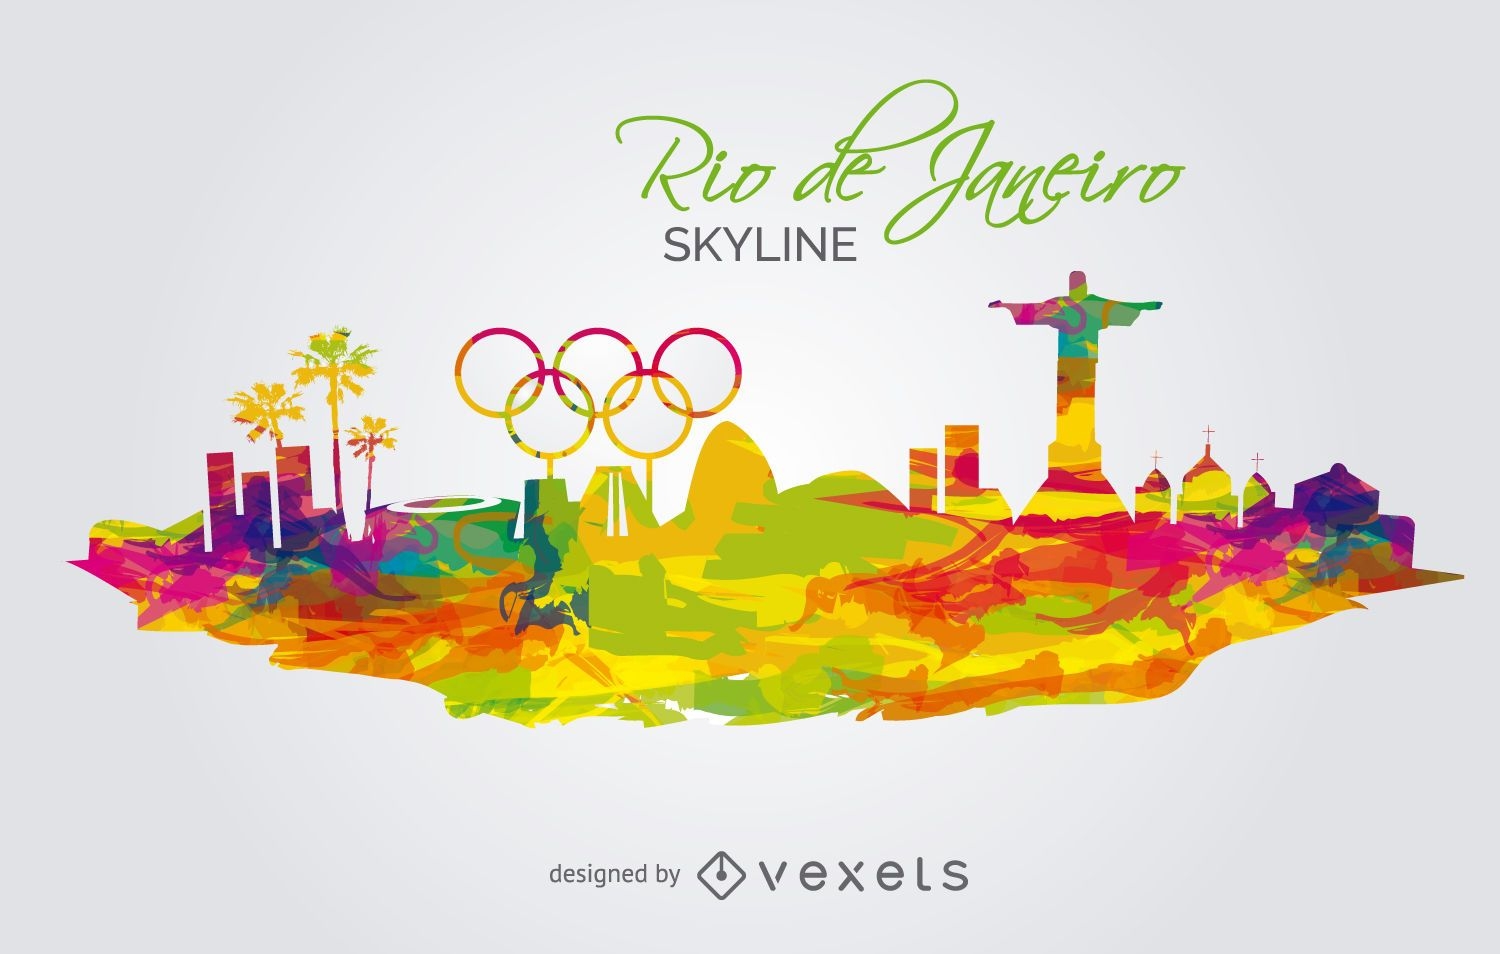 Olympia 2016-Rio de Janeiro Skyline